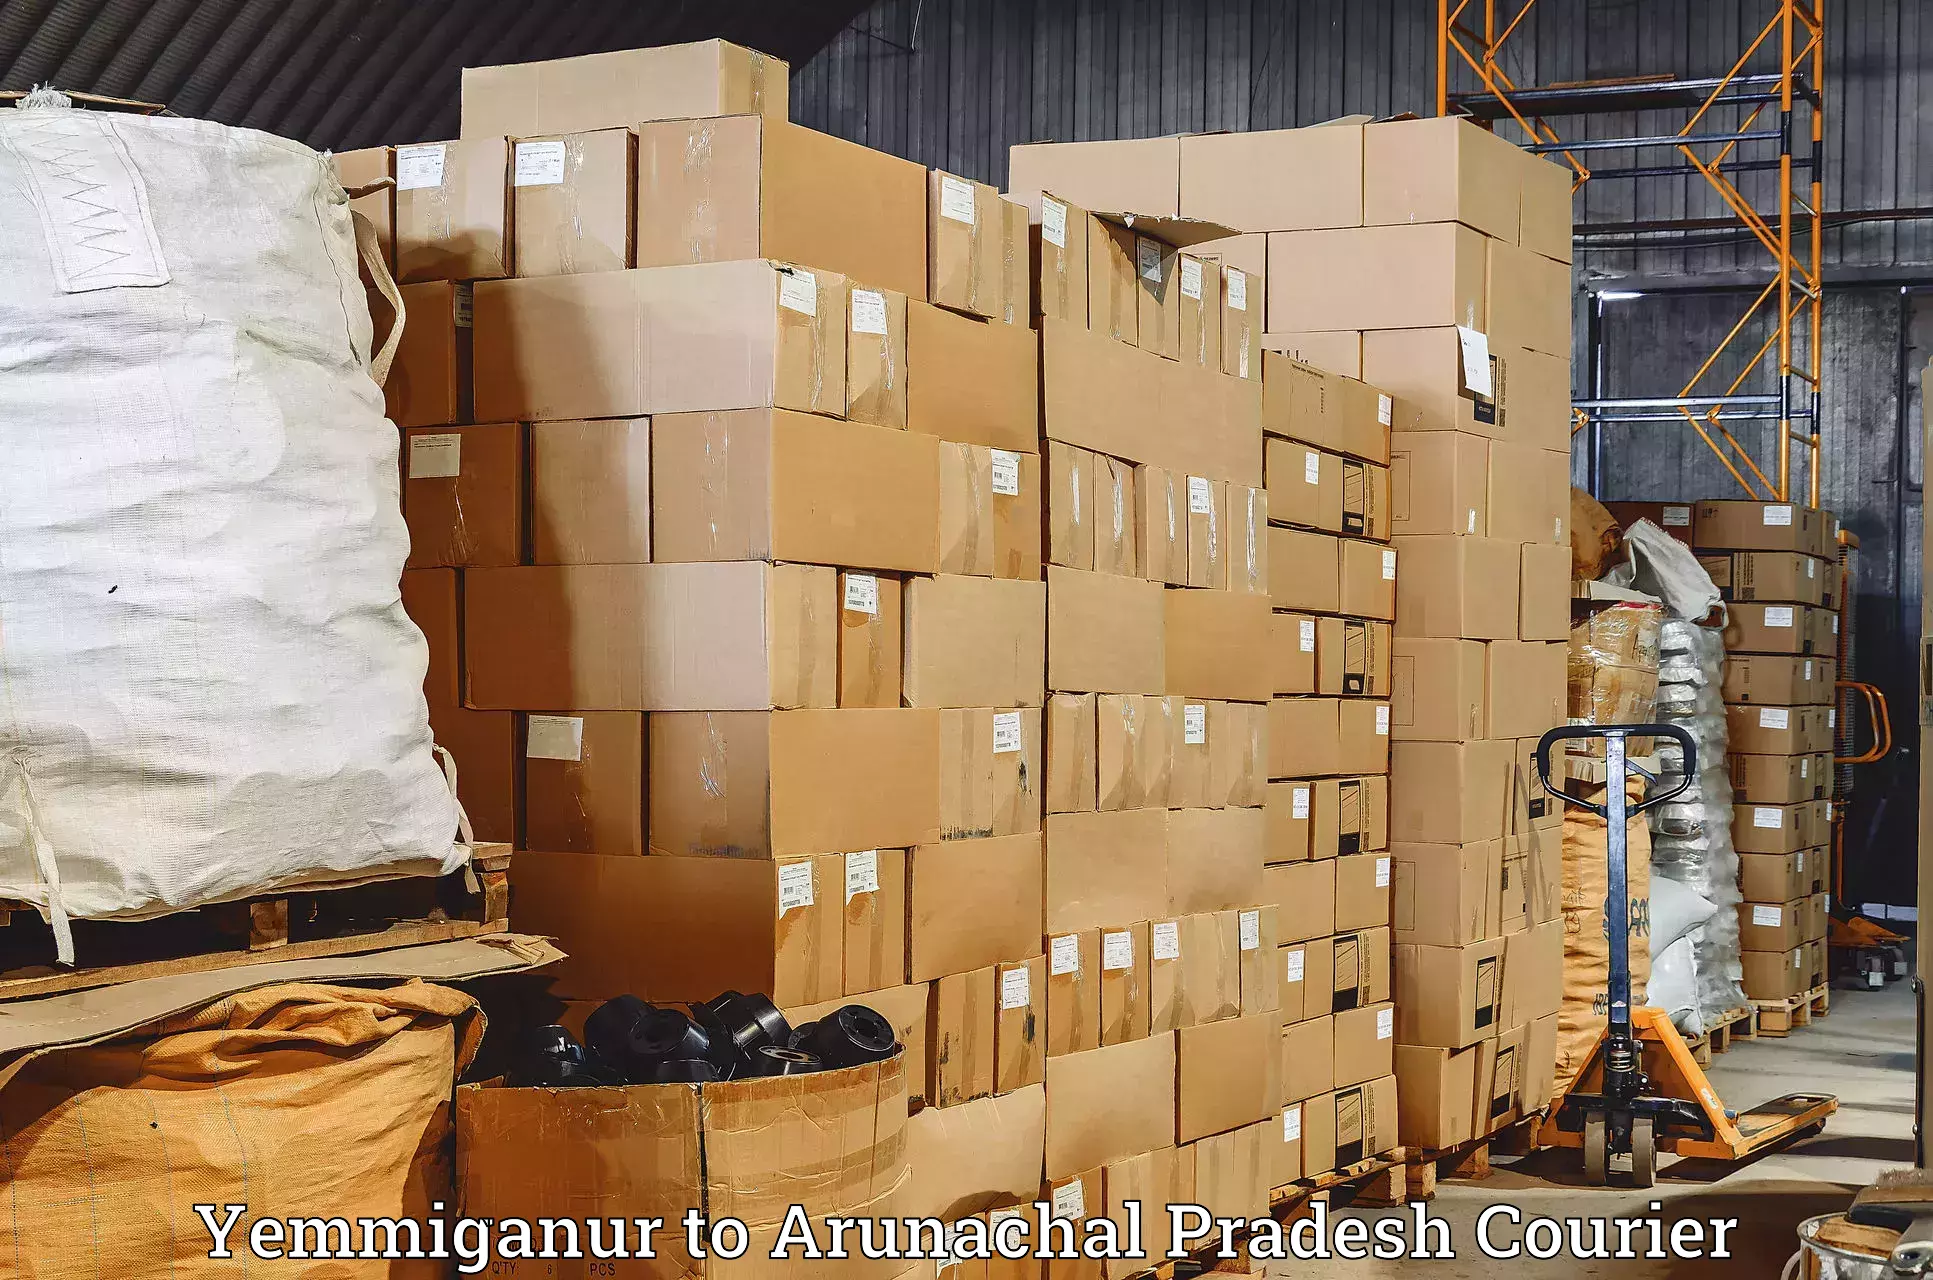 Global freight services Yemmiganur to Arunachal Pradesh